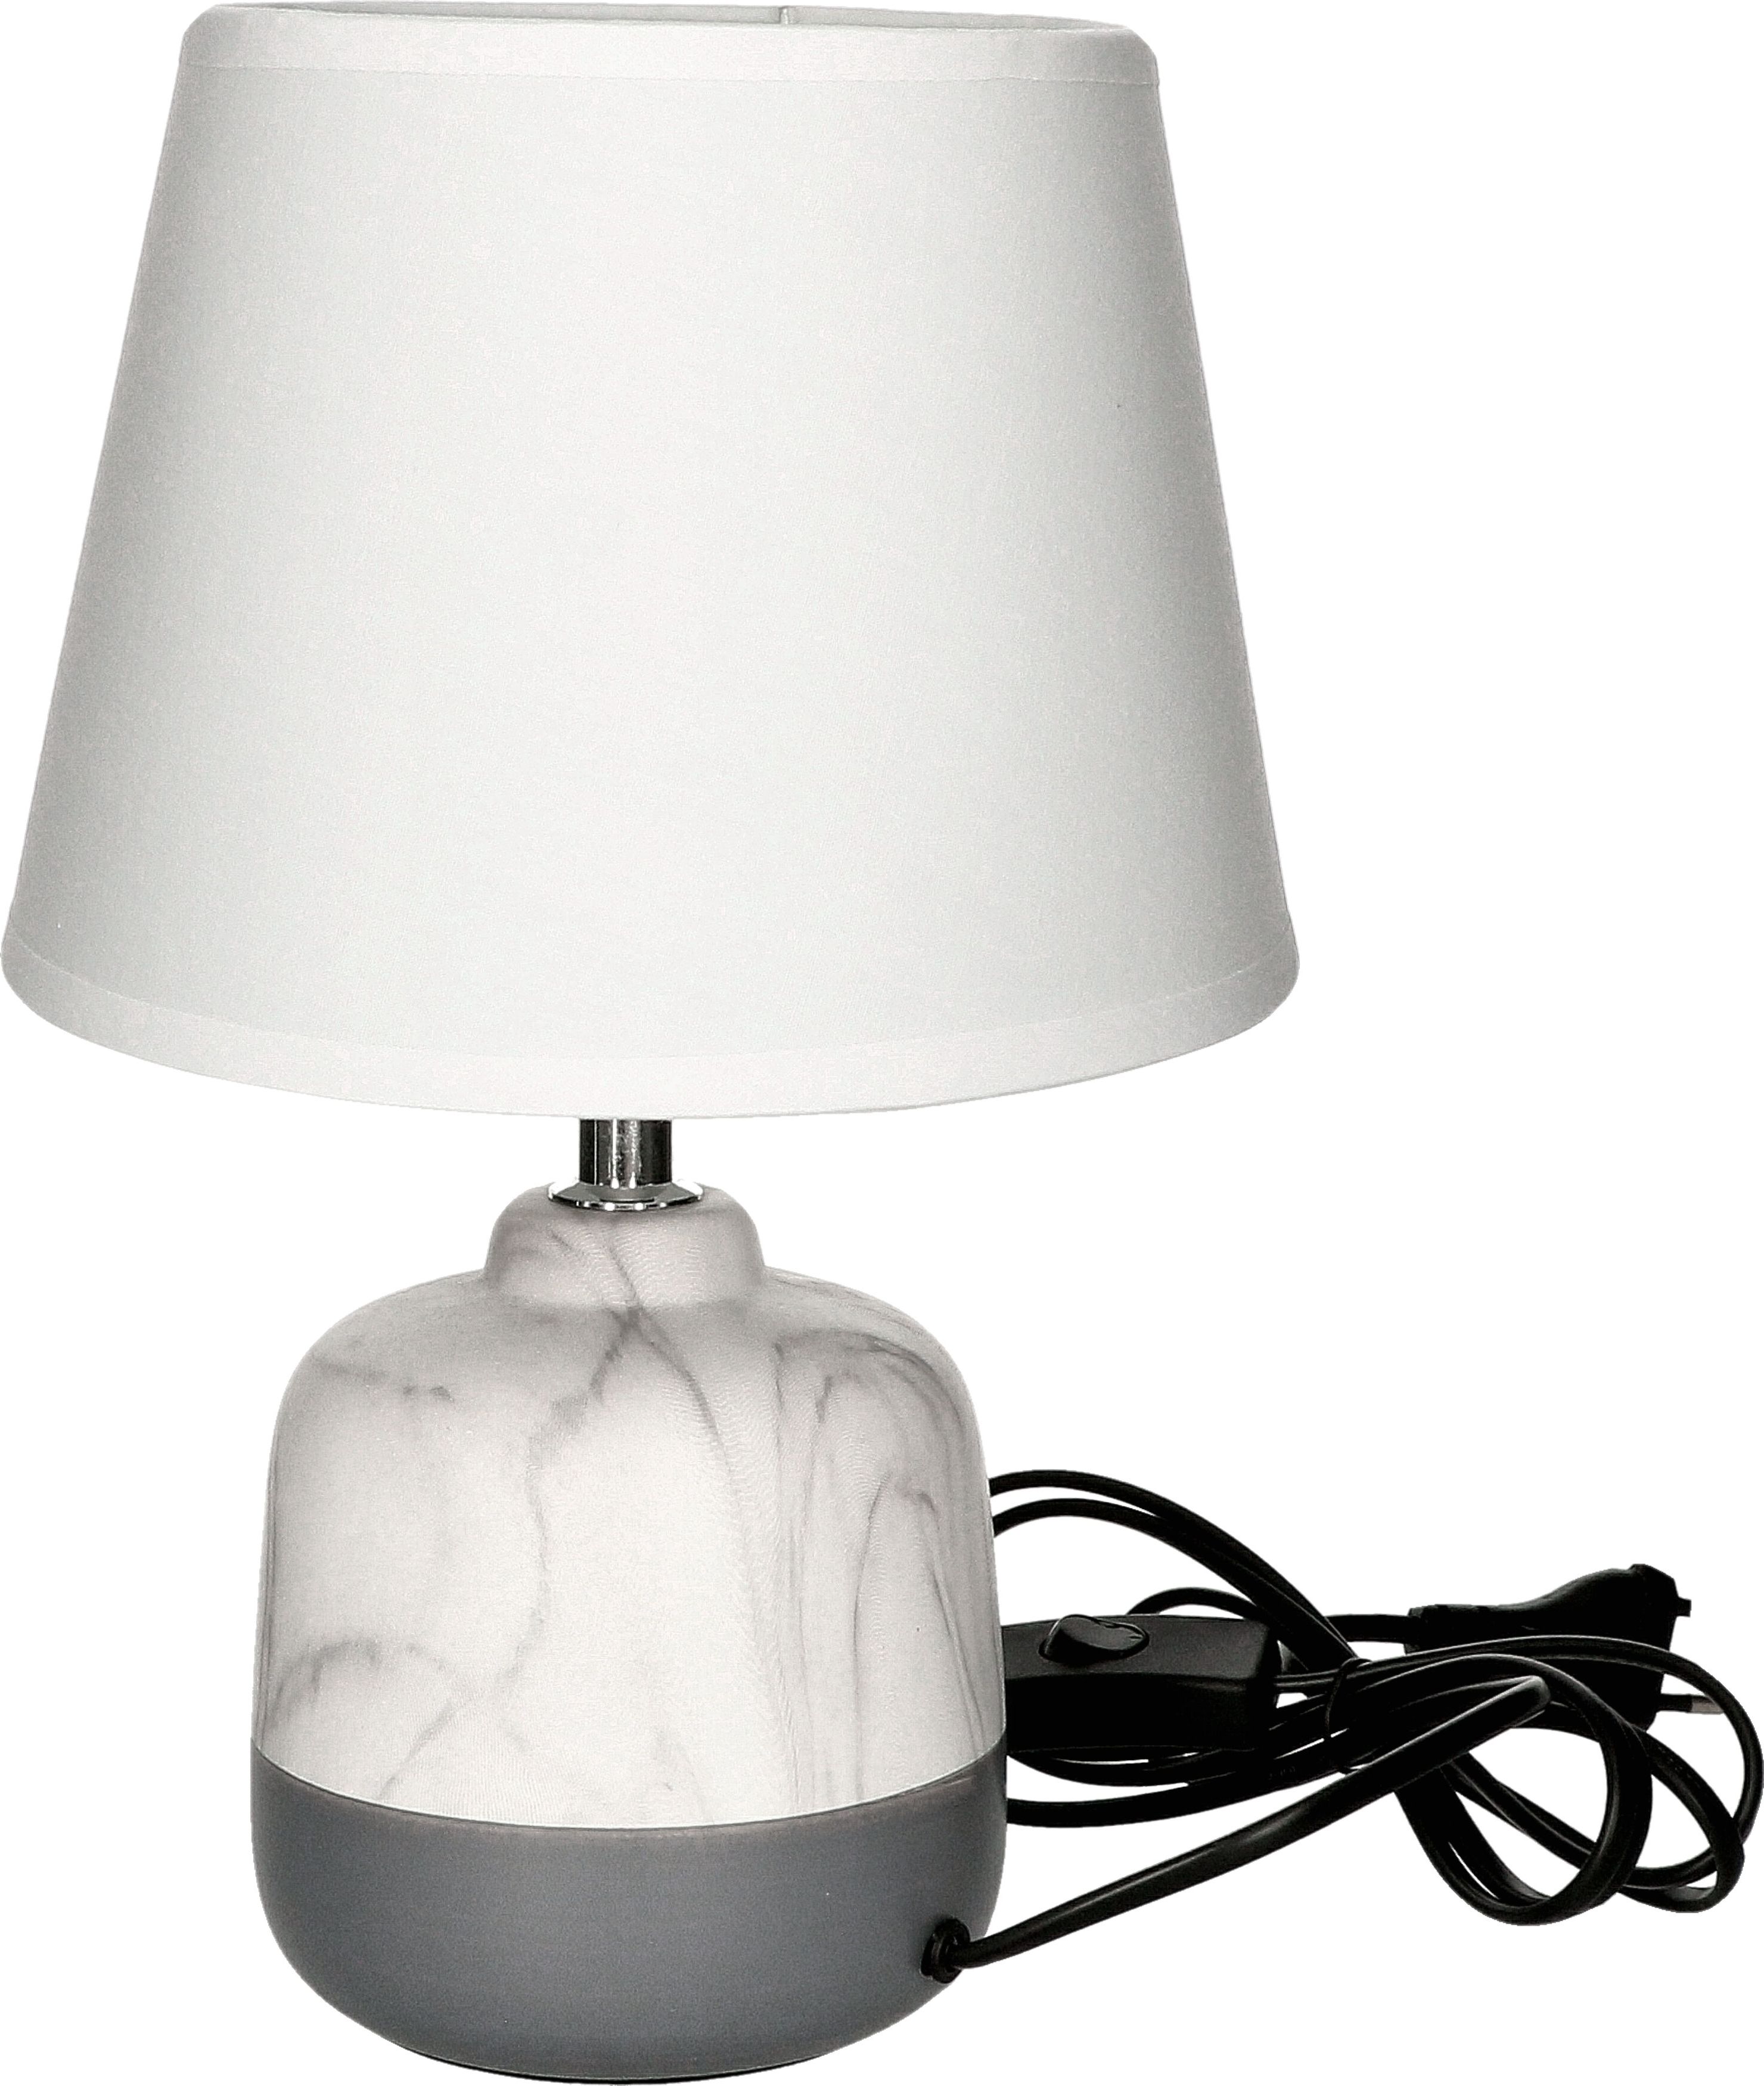 Zdjęcia - Lampa stołowa Vitalux   Lampka stołowa SINOPE szaro - biała klosz beż E14 Vi 